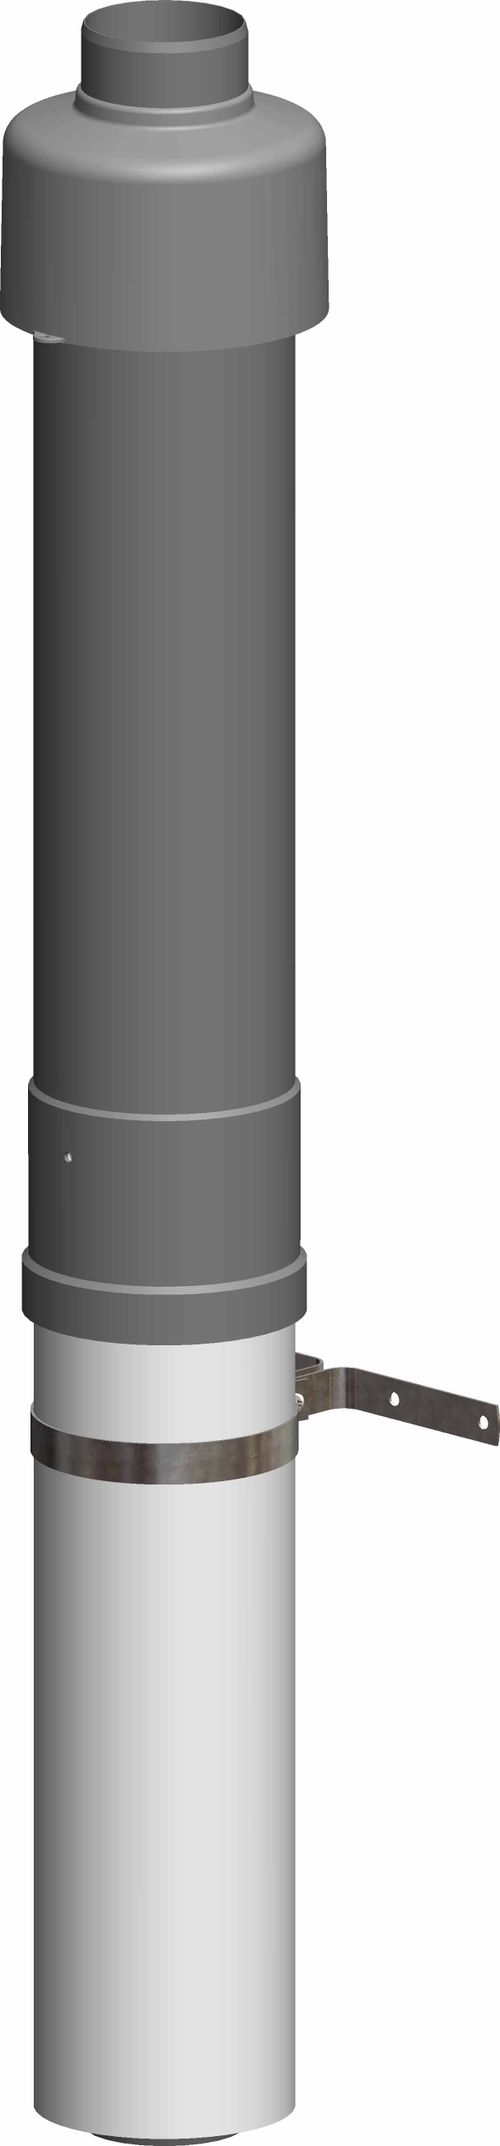 ATEC-Dachdurchfuehrung-DN-80-125-650mm-schwarz-inkl-Befestigungsschelle-1458